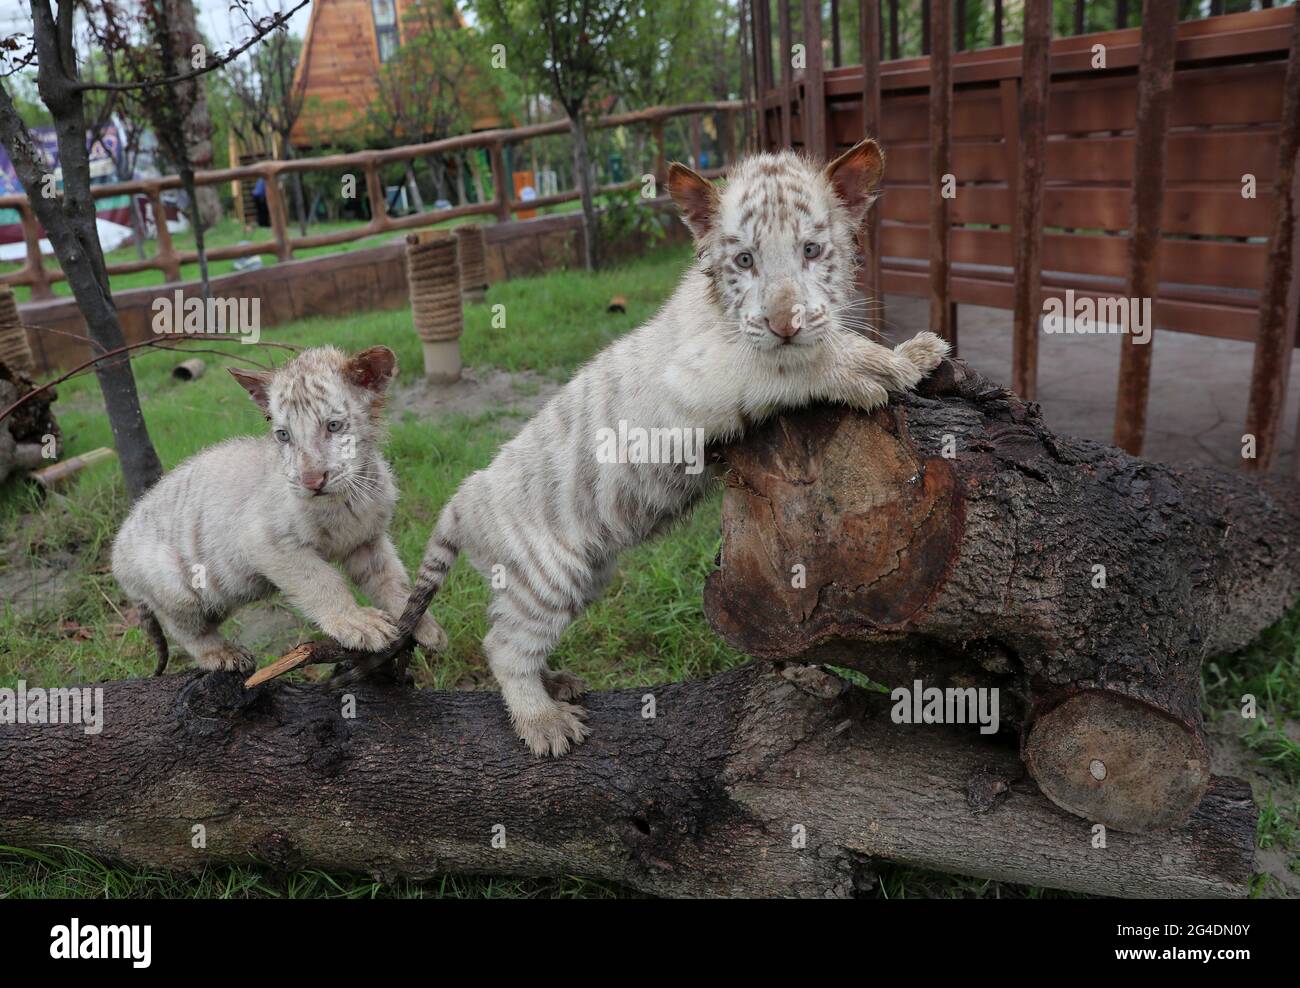 Nantong, Nantong, Chine. 21 juin 2021. Le 18 juin 2021, de mignons triplés de petits oursons de tigre blanc sont apparus dans la zone de la cabane des arbres de Sandi Tribe, dans le parc naturel de la forêt de Nantong, dans la province de Jiangsu, pour s'adapter au nouveau site. Les trois petits tigres blancs sont nés en avril et sont tous des hommes. Les petits tigres blancs vivront dans cette zone et auront un contact étroit avec les touristes dans la zone de la maison d'arbres. Il est entendu que c'est le premier triplés de tigre blanc rare qui a été élevé avec succès depuis l'ouverture du parc naturel de la forêt de Nantong en 2018. Les tigres blancs sont plus rares que les tigres ordinaires, et là Banque D'Images